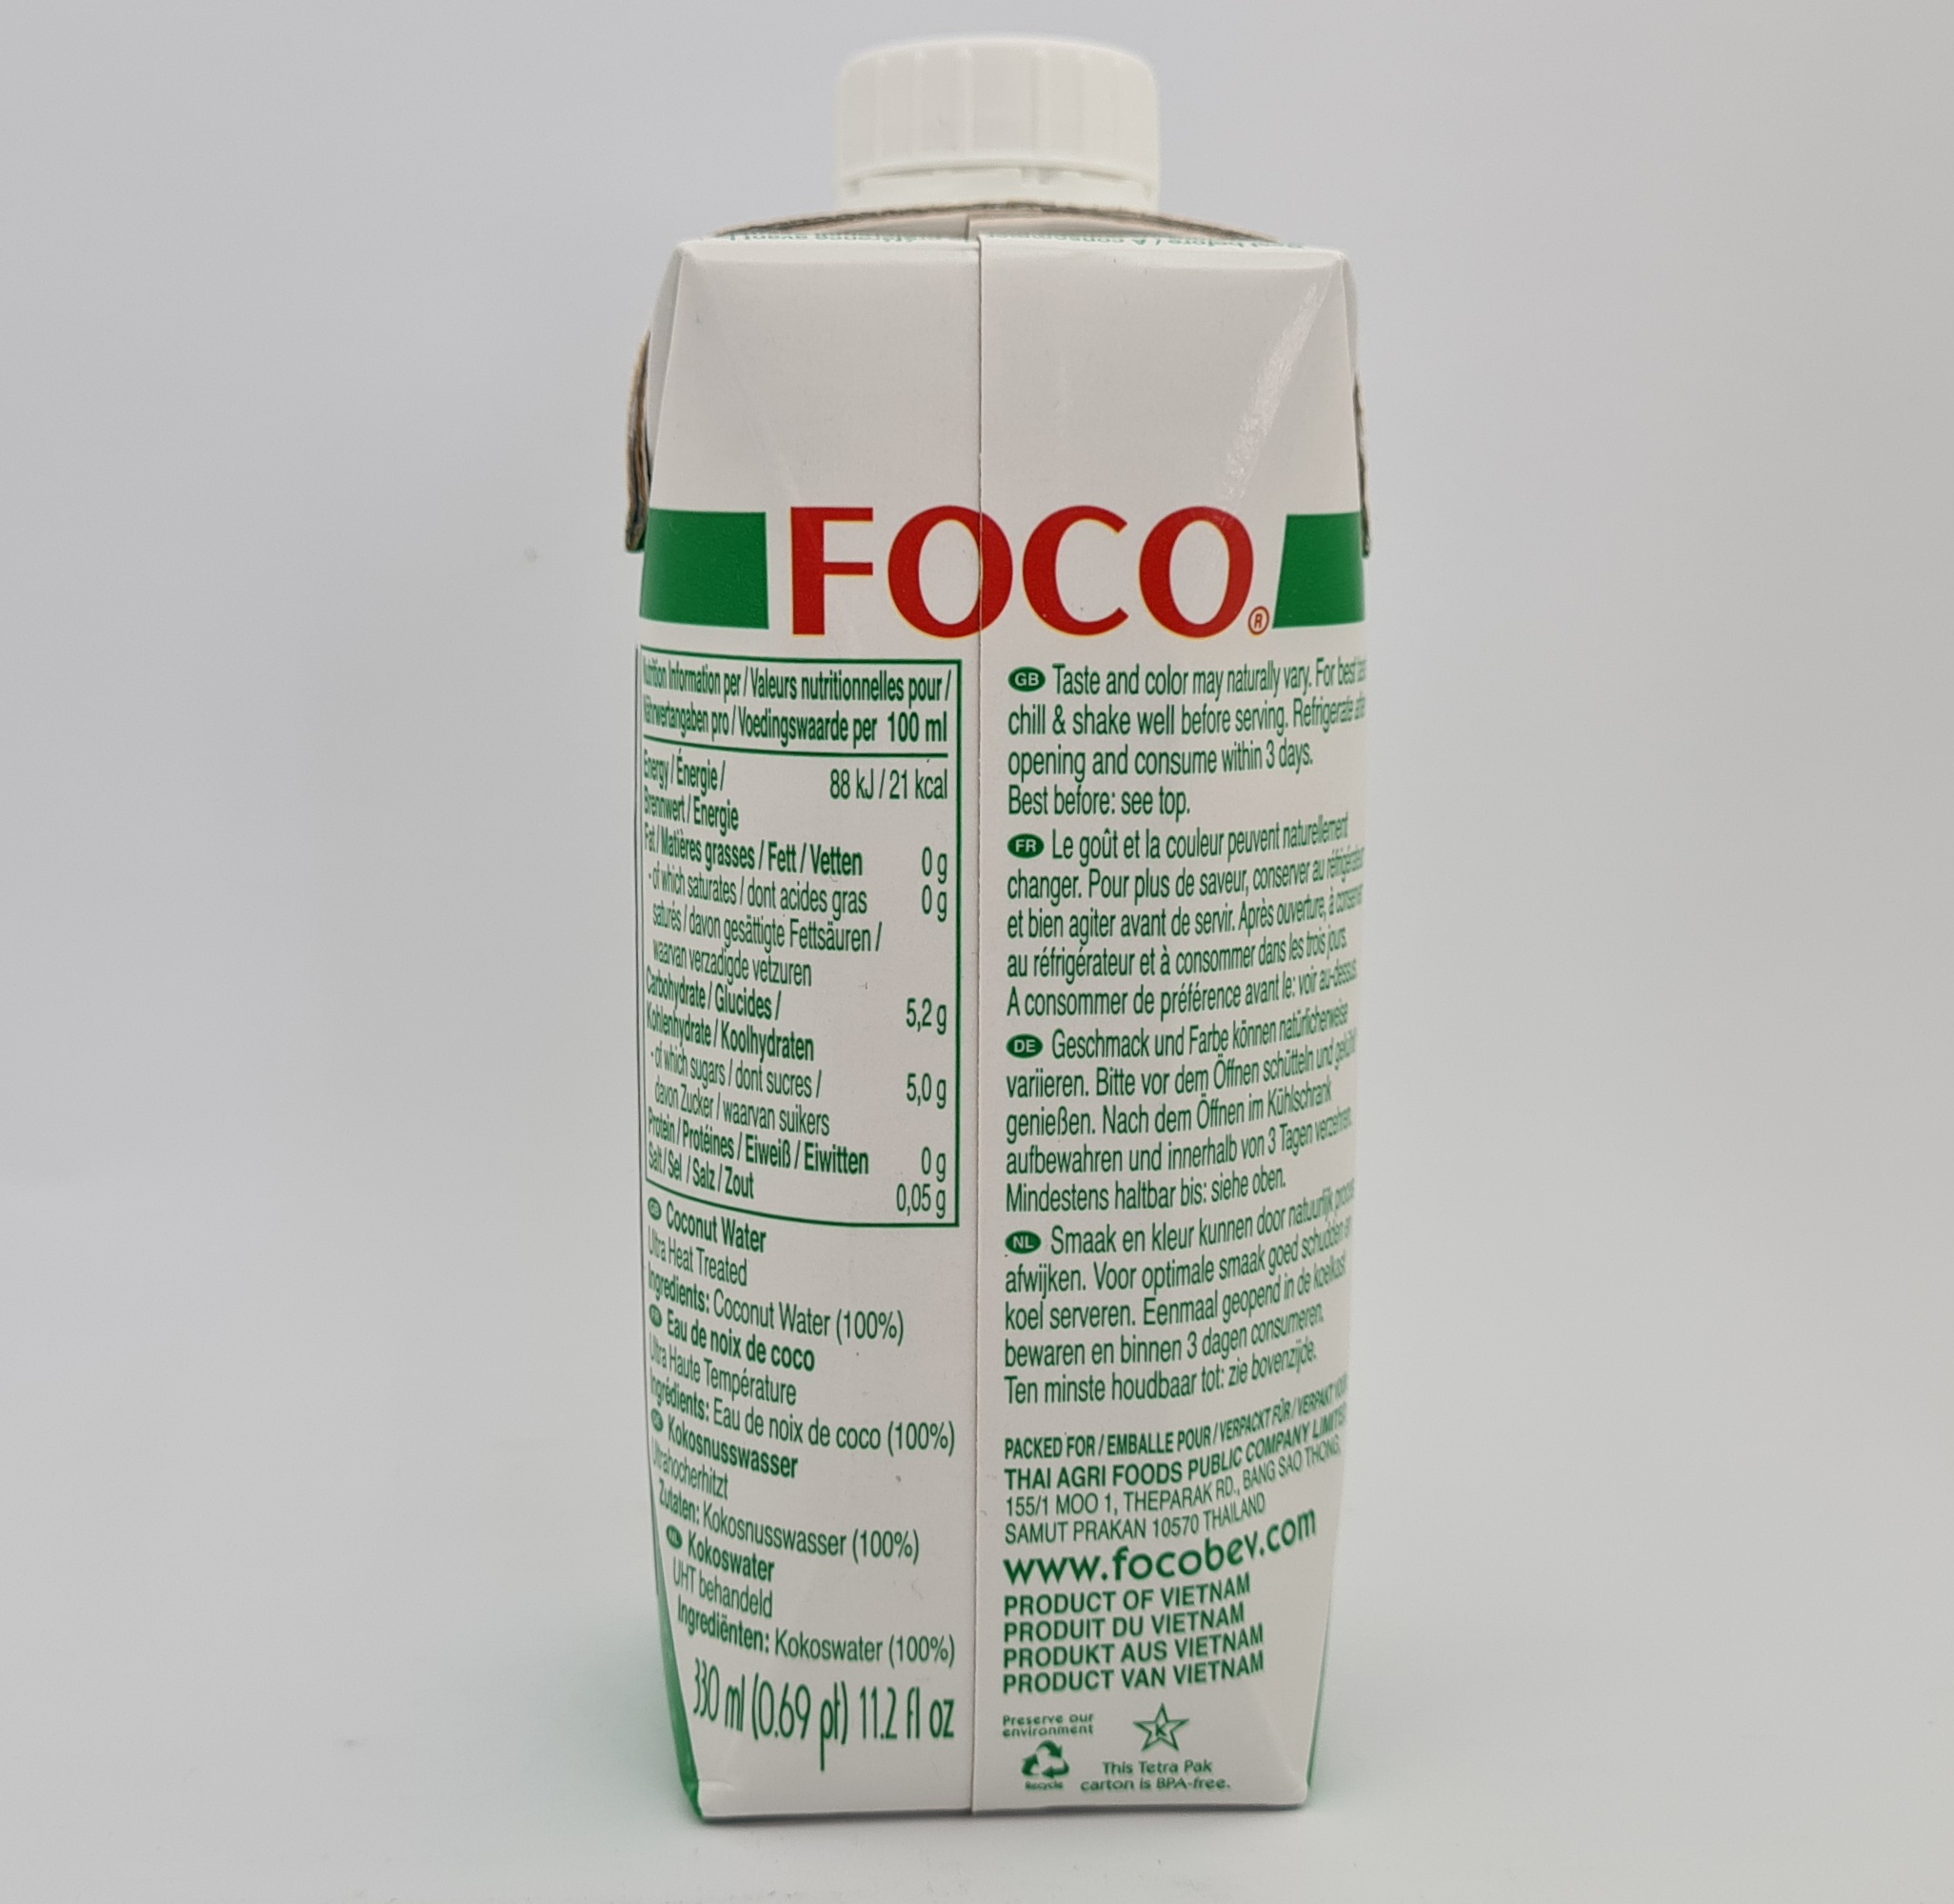 Prírodná kokosová voda Foco 330 ml